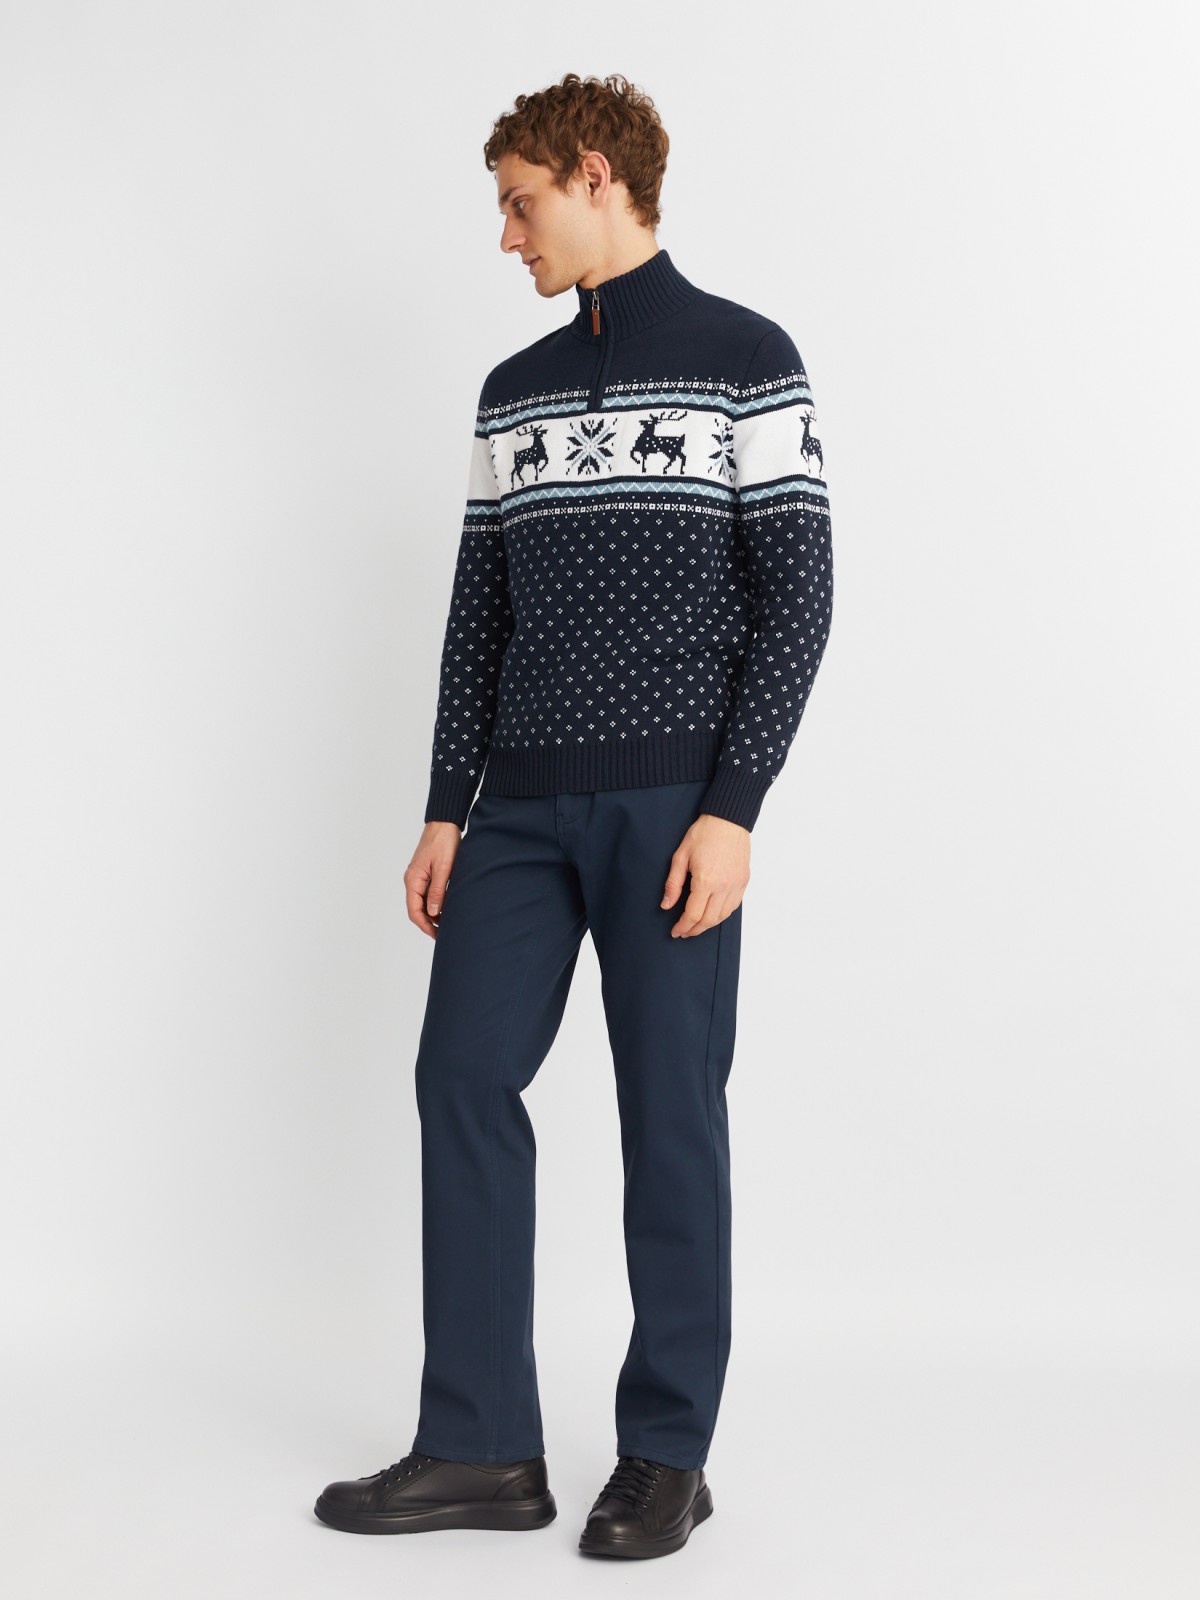 Вязаный свитер с воротником на молнии и скандинавским узором zolla 013436823043, цвет синий, размер M - фото 2